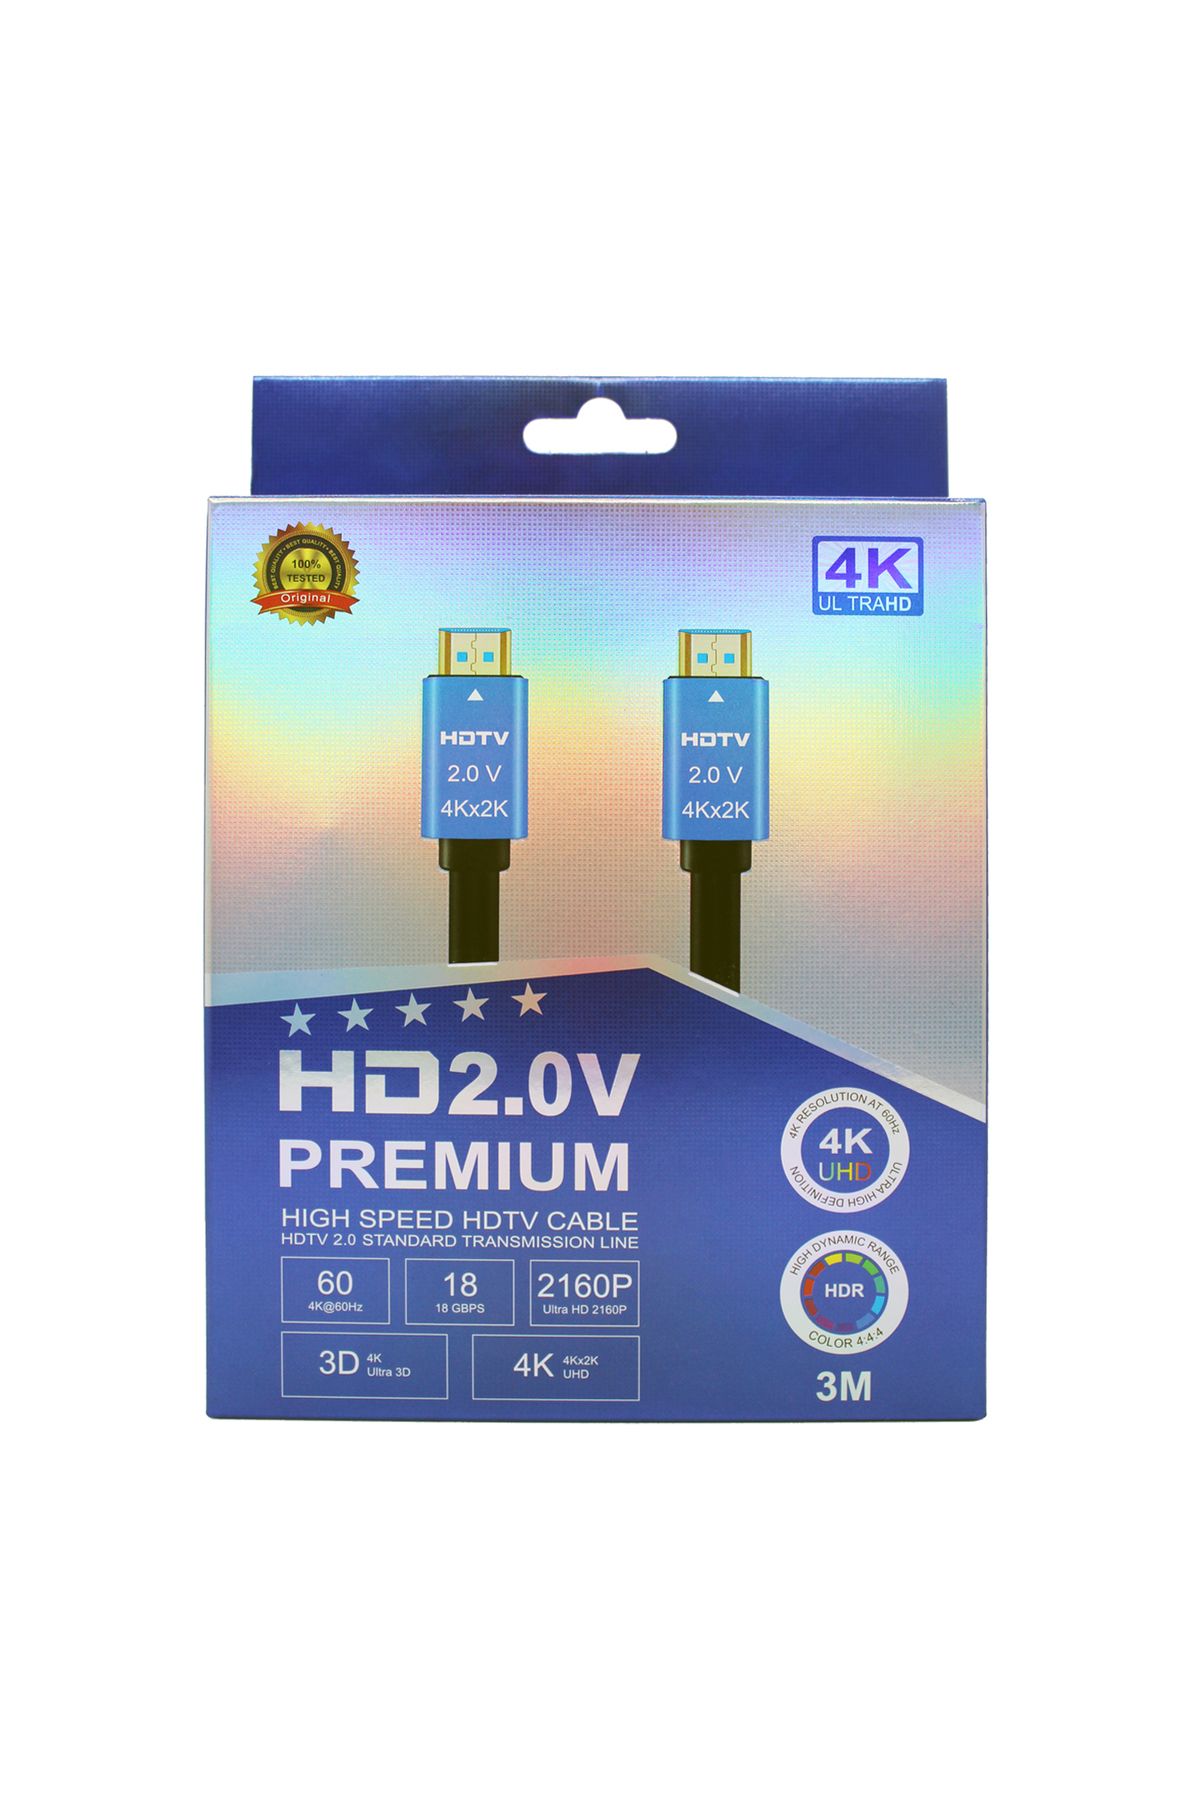 Rastpage HDTV Premium Yüksek hızlı 4K Ultra HD HDMI 2.0 Ses ve Görüntü Kablosu 3 Metre